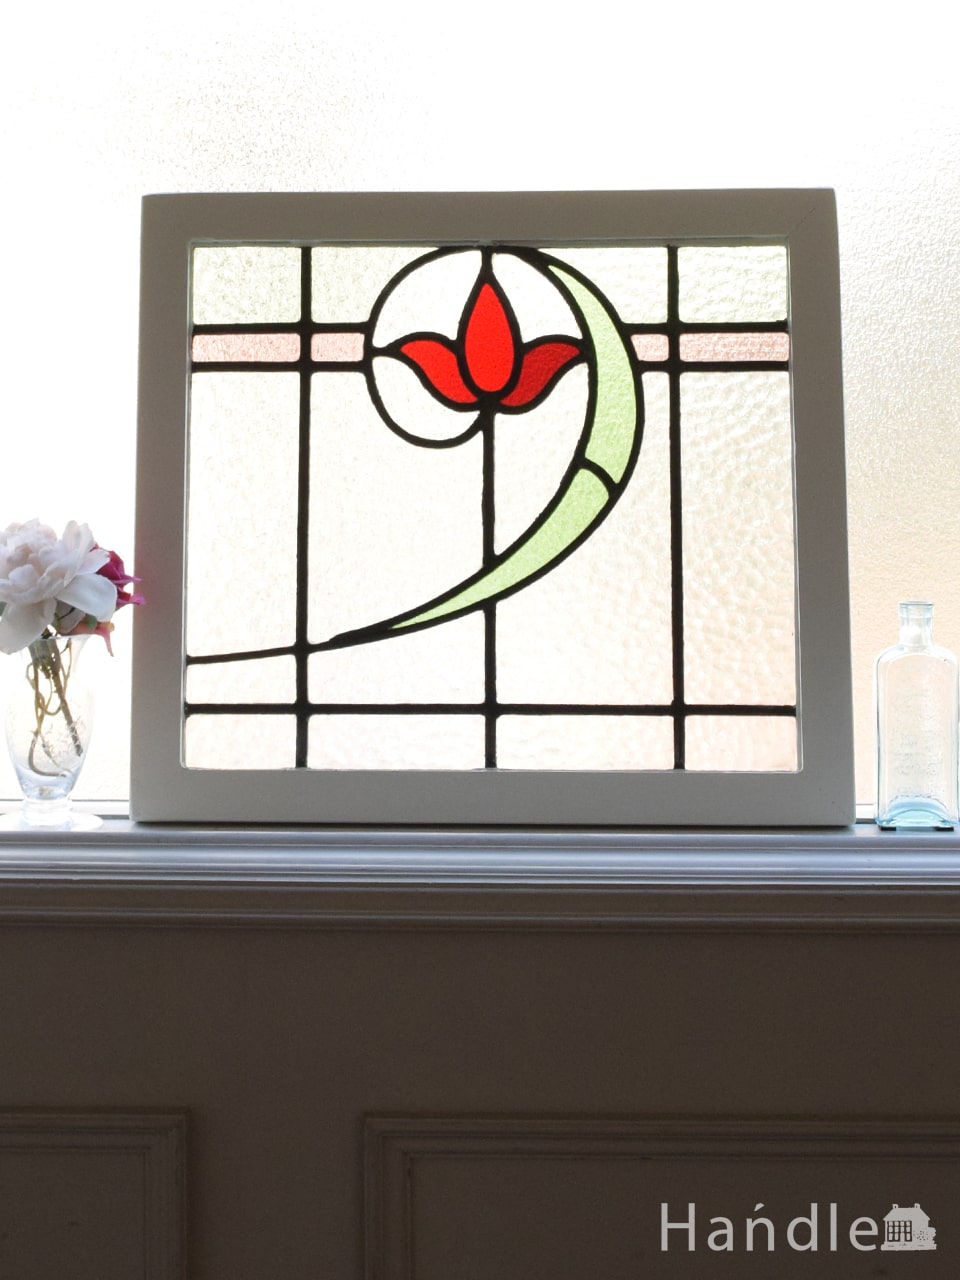 英国アンティークのステンドグラス、曲線が美しい真っ赤なお花模様のステンドグラス (g-1455)